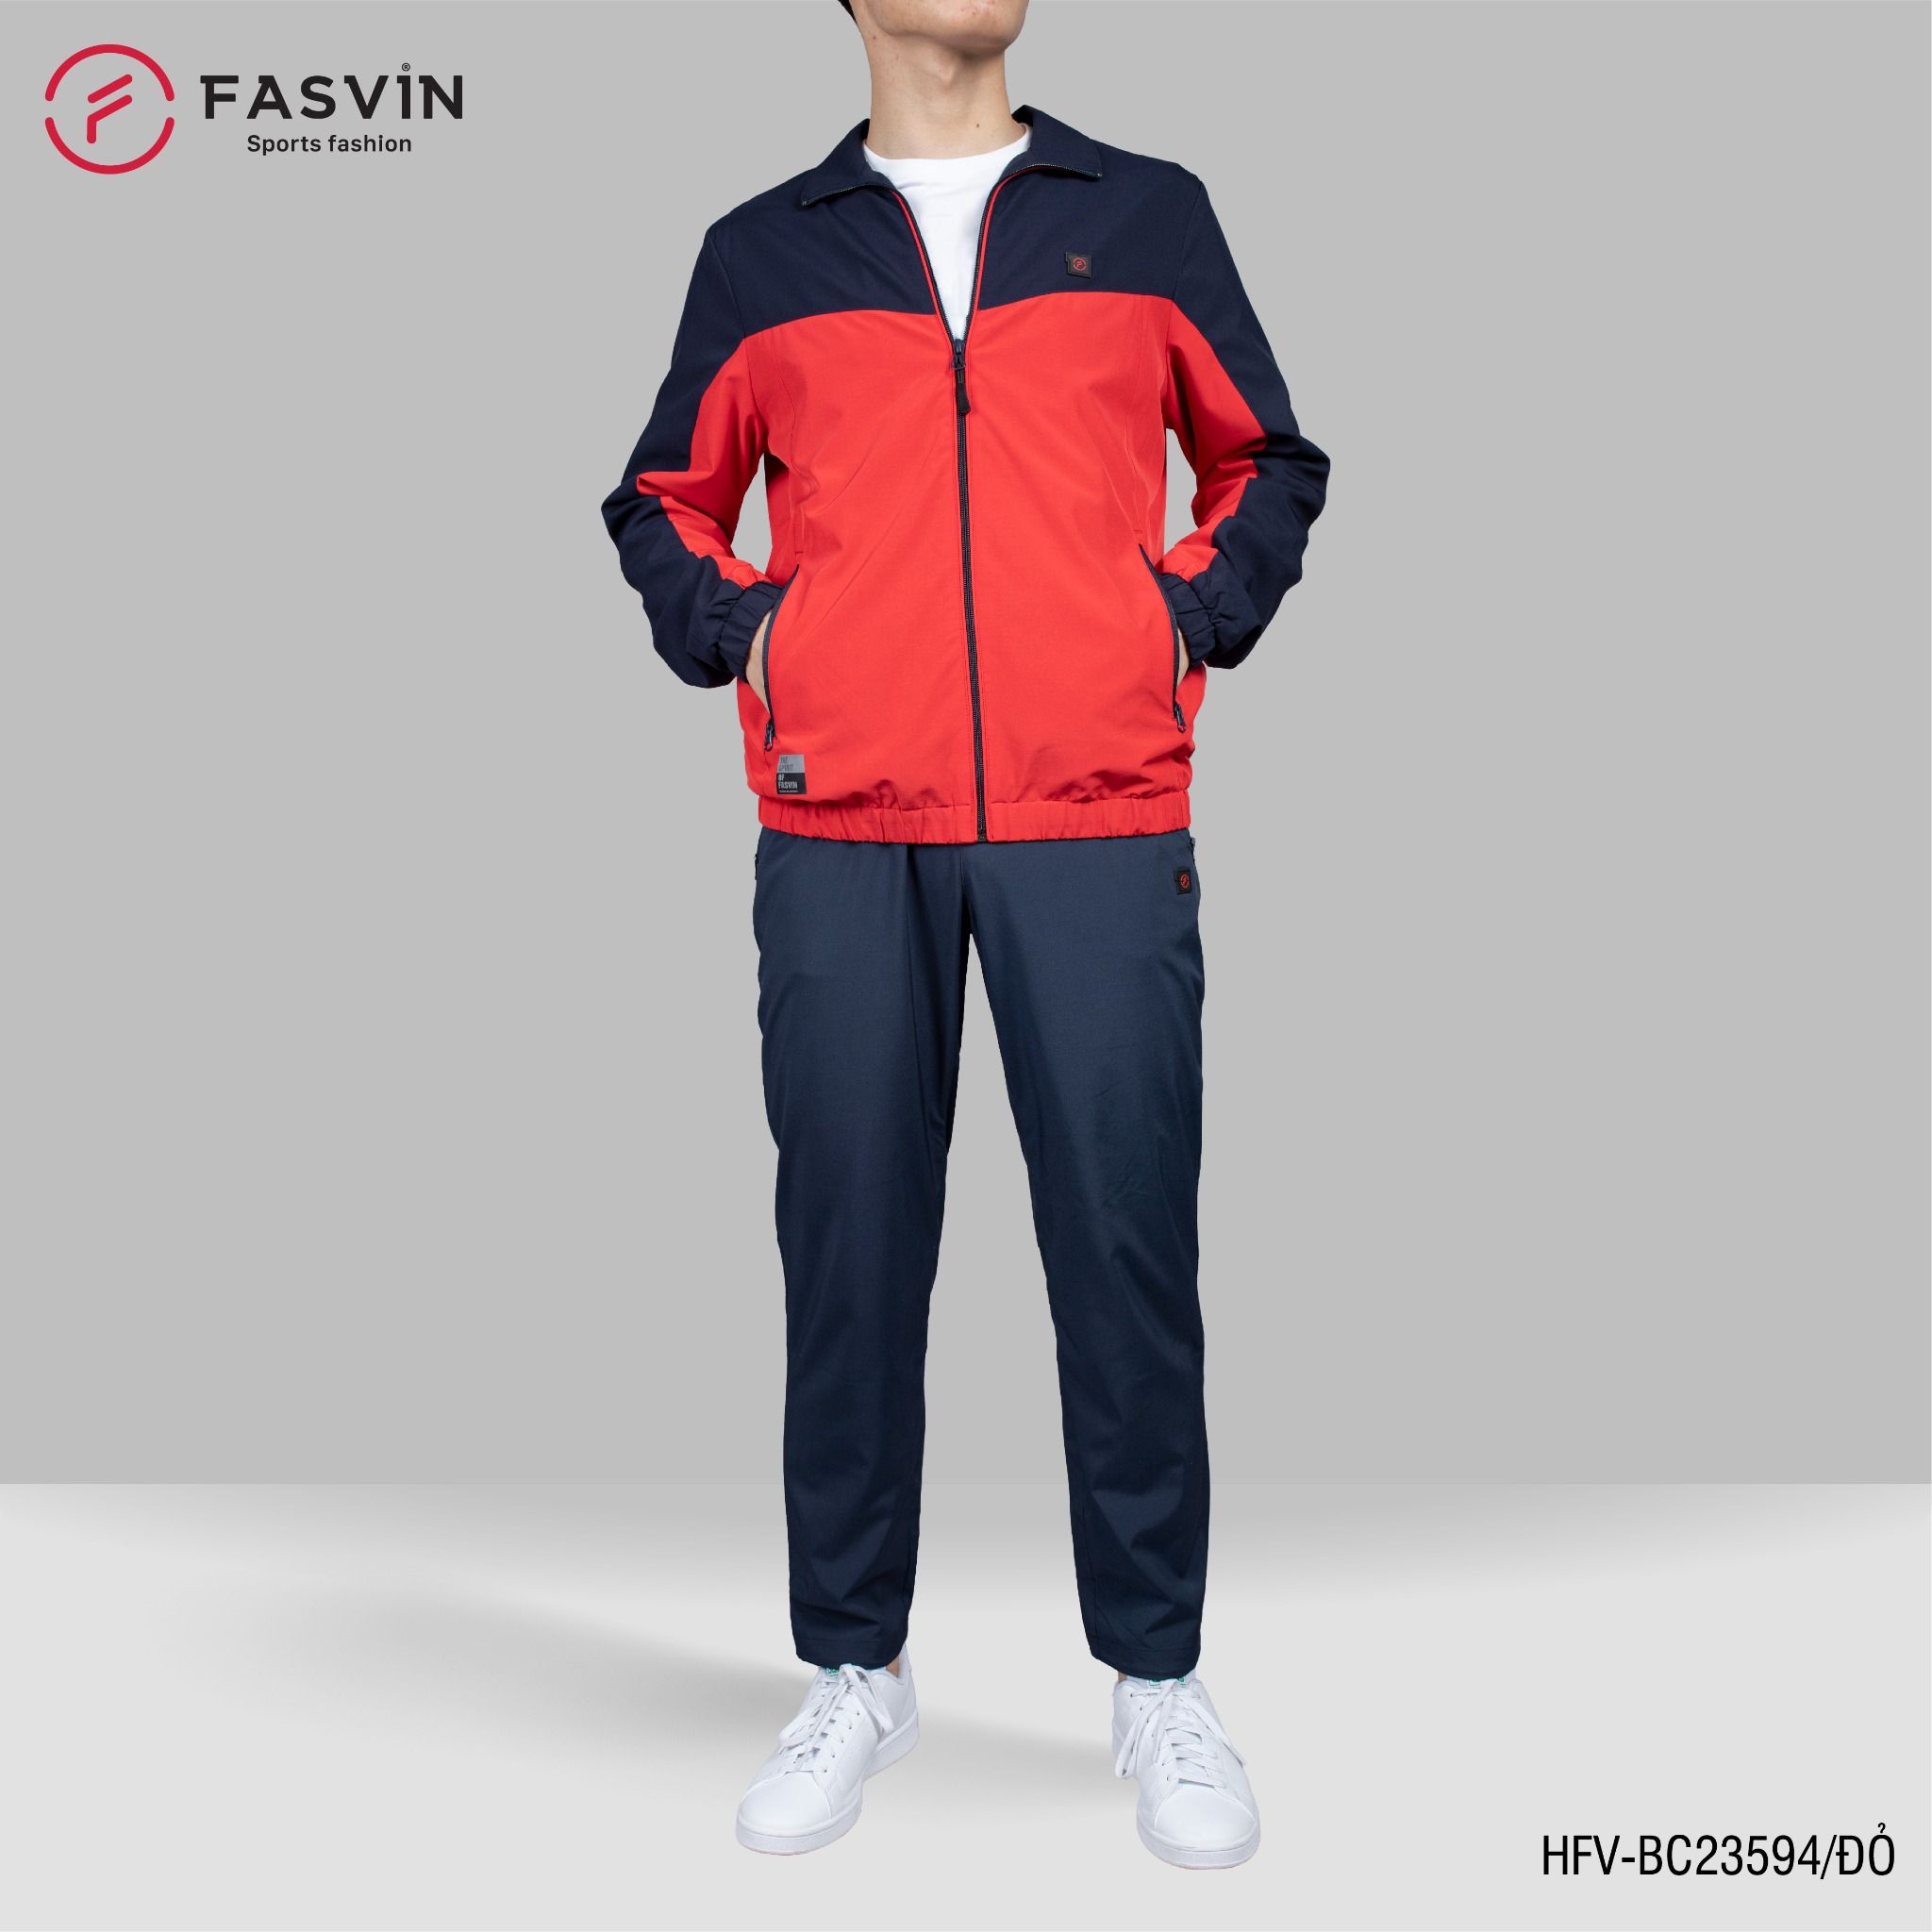  Bộ quần áo gió nam 2 lớp FASVIN BC23594 vải thể thao cao cấp lót vải thun hàng chính hãng 